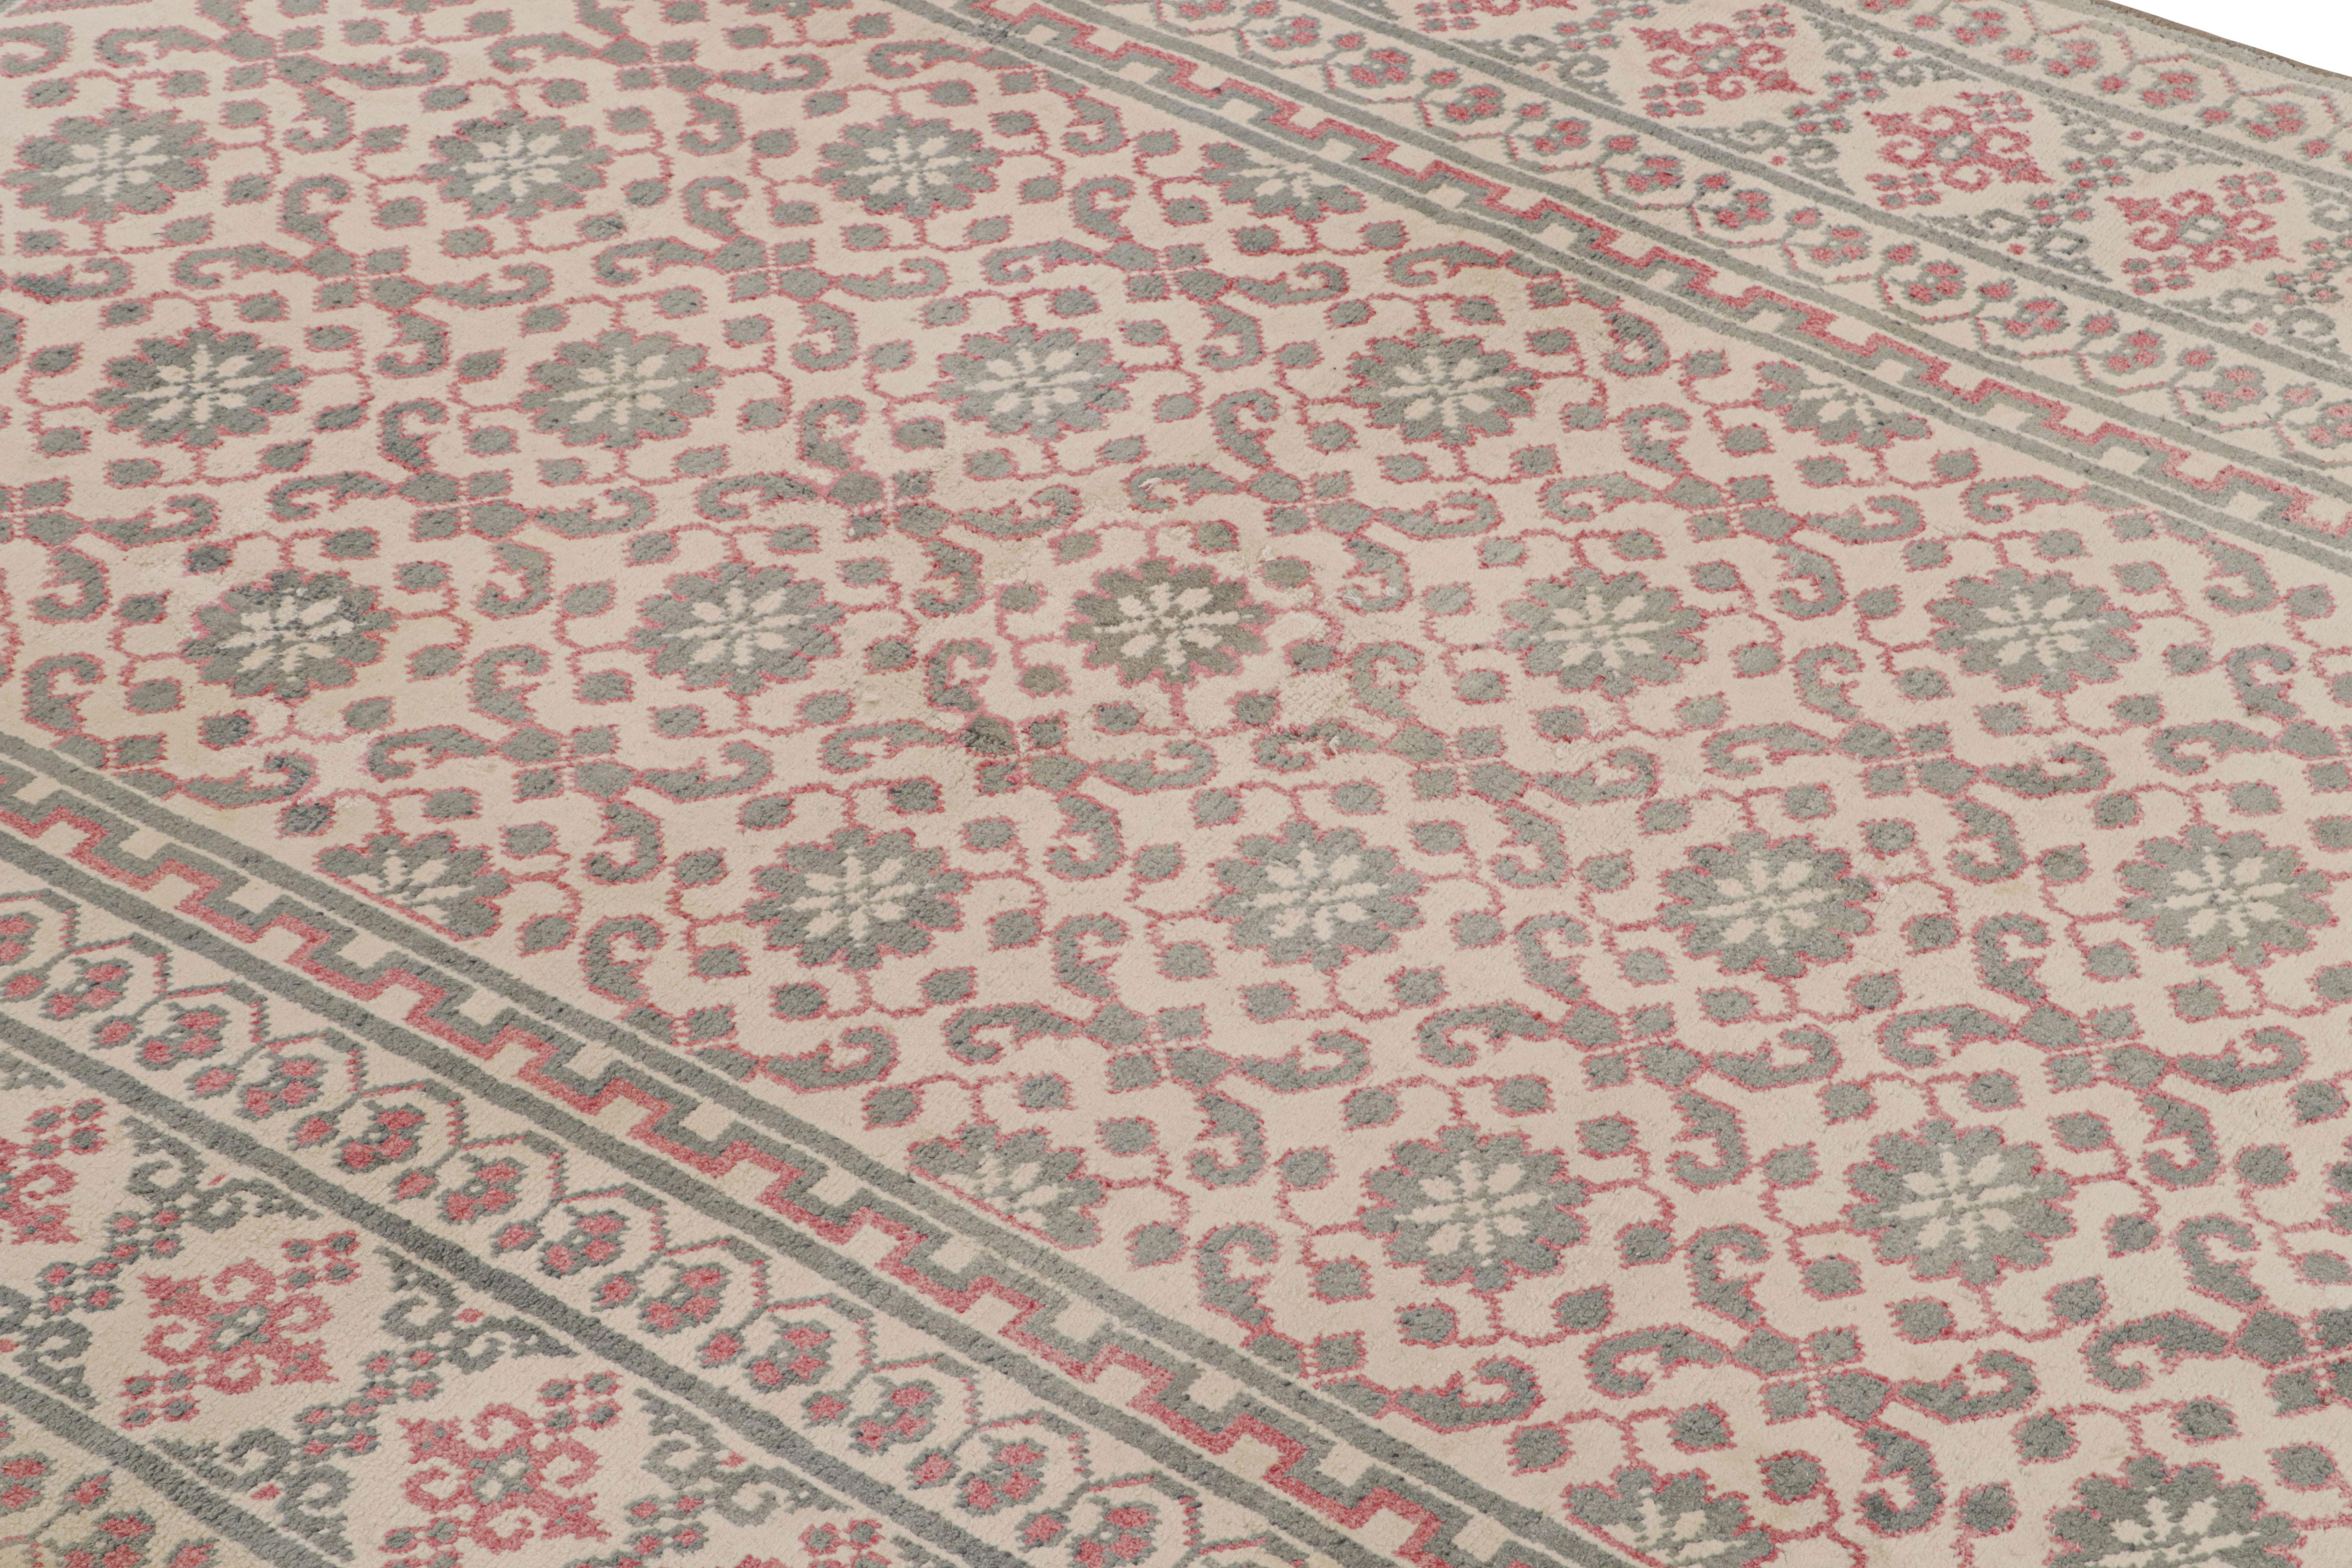 Handgeknüpfte Wolle, aus Indien um 1920-1930, ein 4x7 besonders seltenes Stück aus dieser Zeit, sowohl in seinem hervorragenden Zustand als auch in seinen ungewöhnlichen Farben 

Über das Design: 

Dieser antike Agra-Teppich mit geometrischen